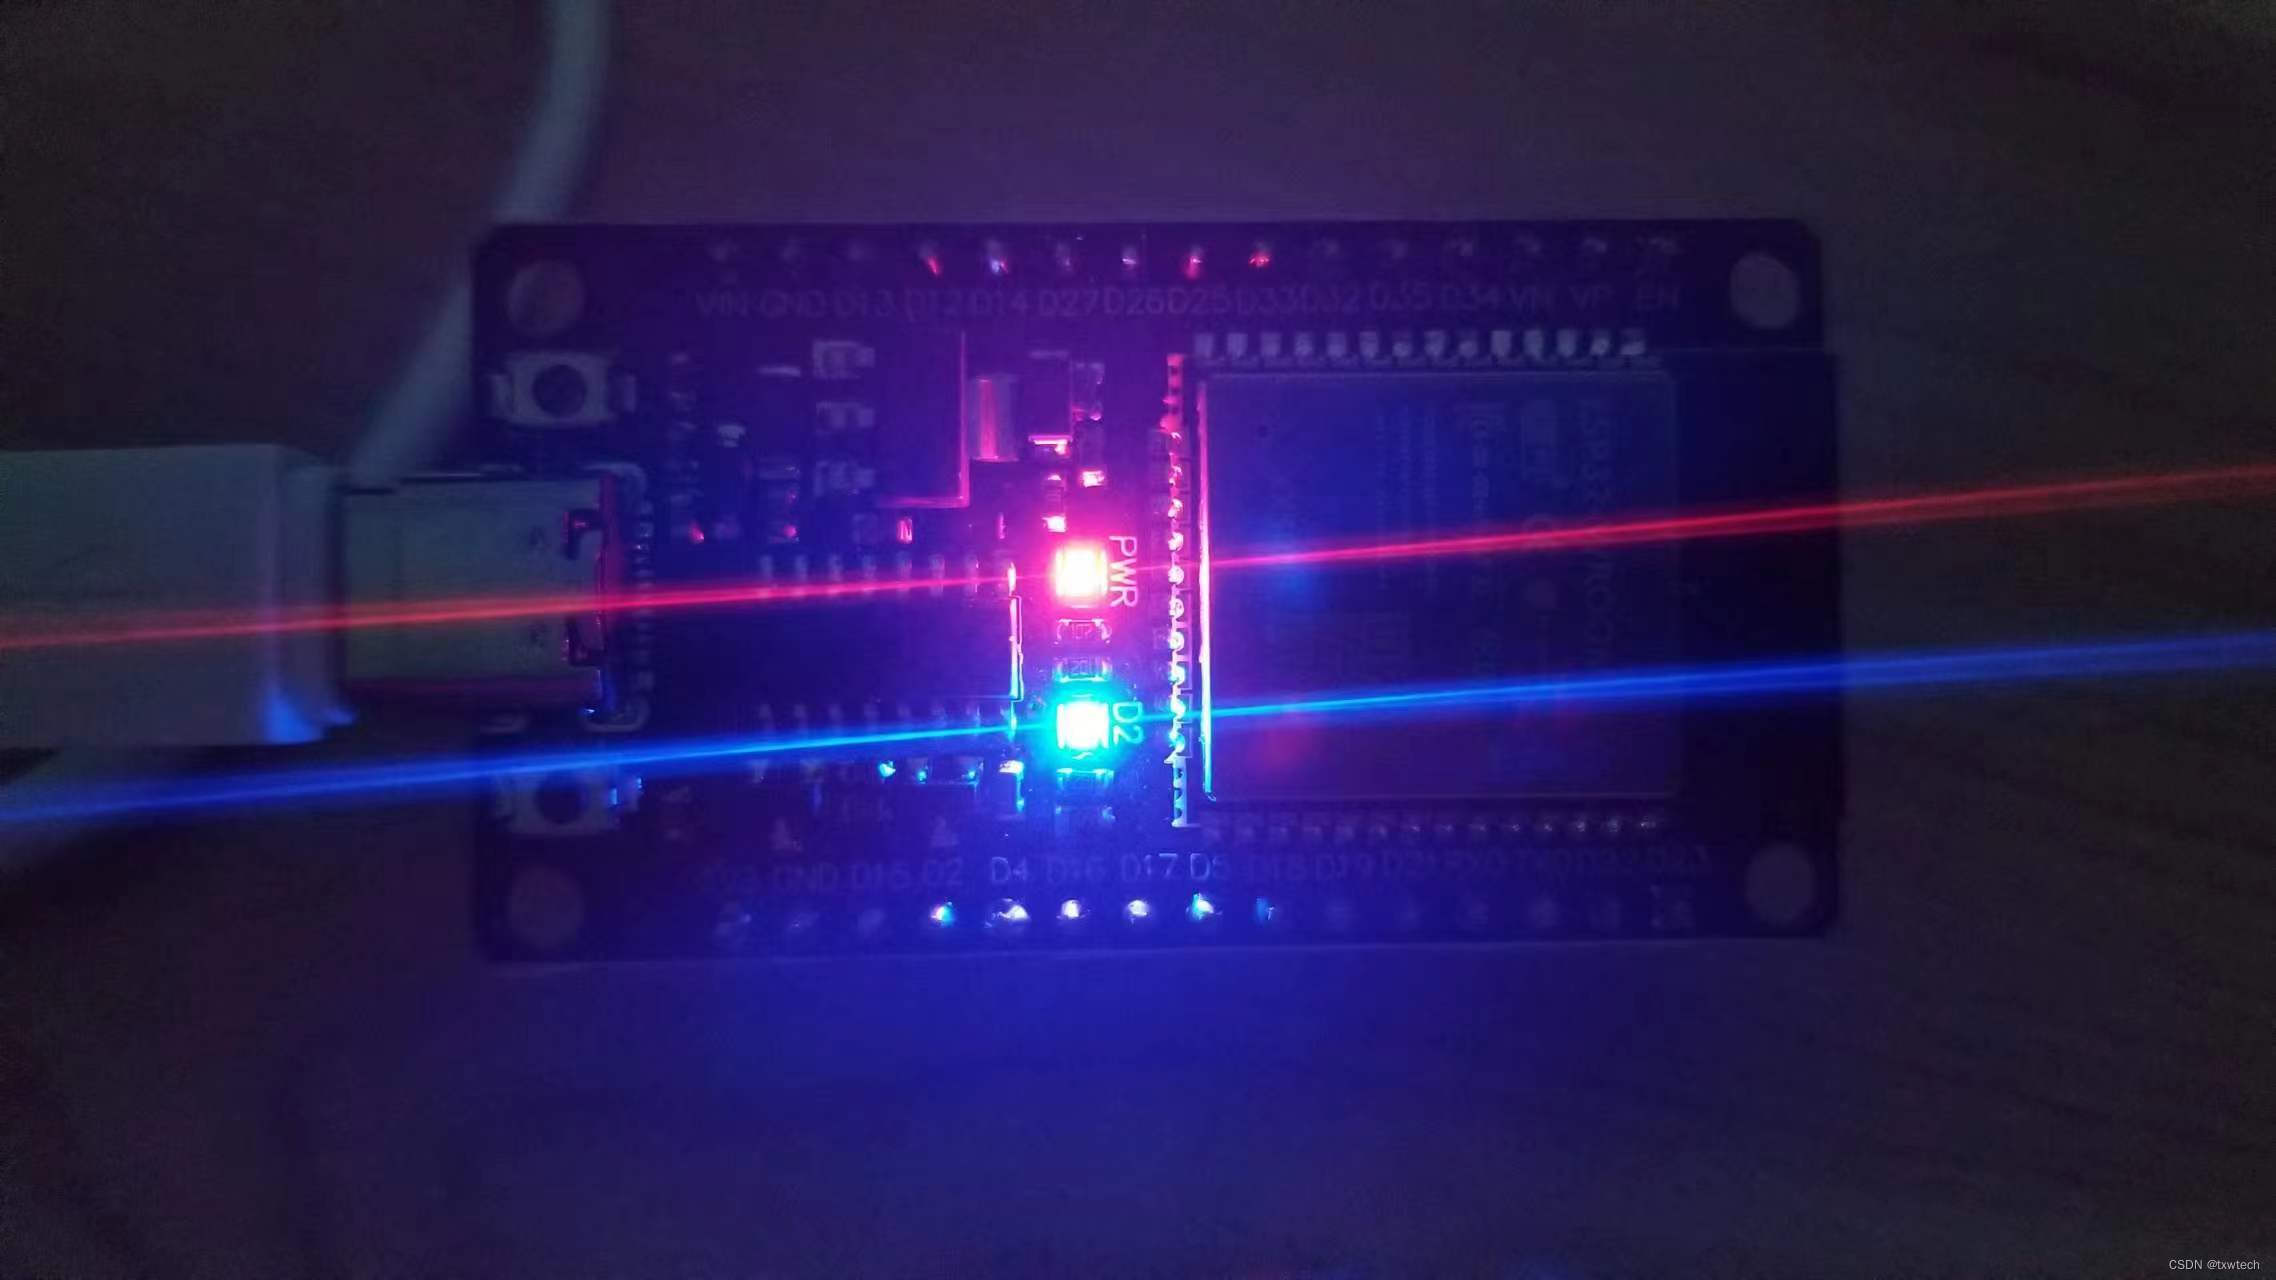 第2篇:ESP32 helloword第一个程序示范点亮板载LED